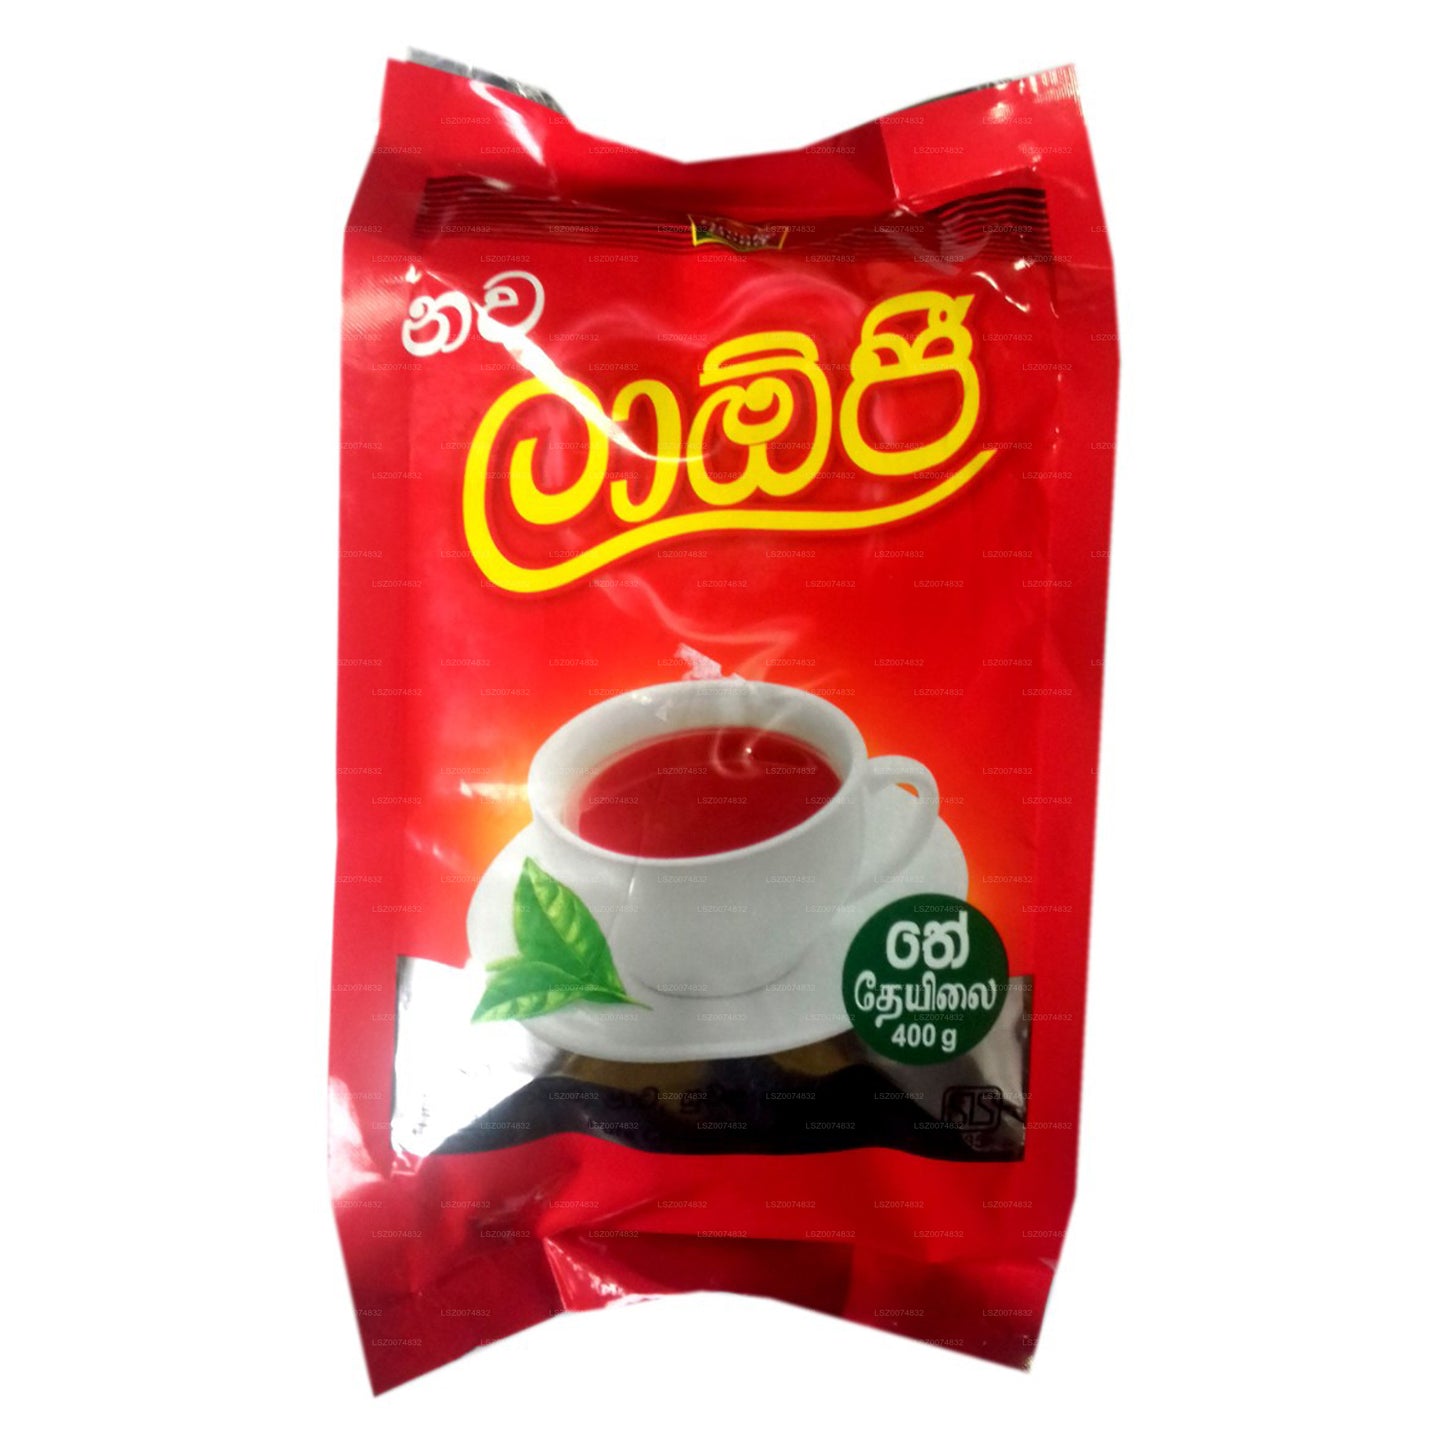 Bolsa de té negro Laojee Pure Ceilán (400 g)